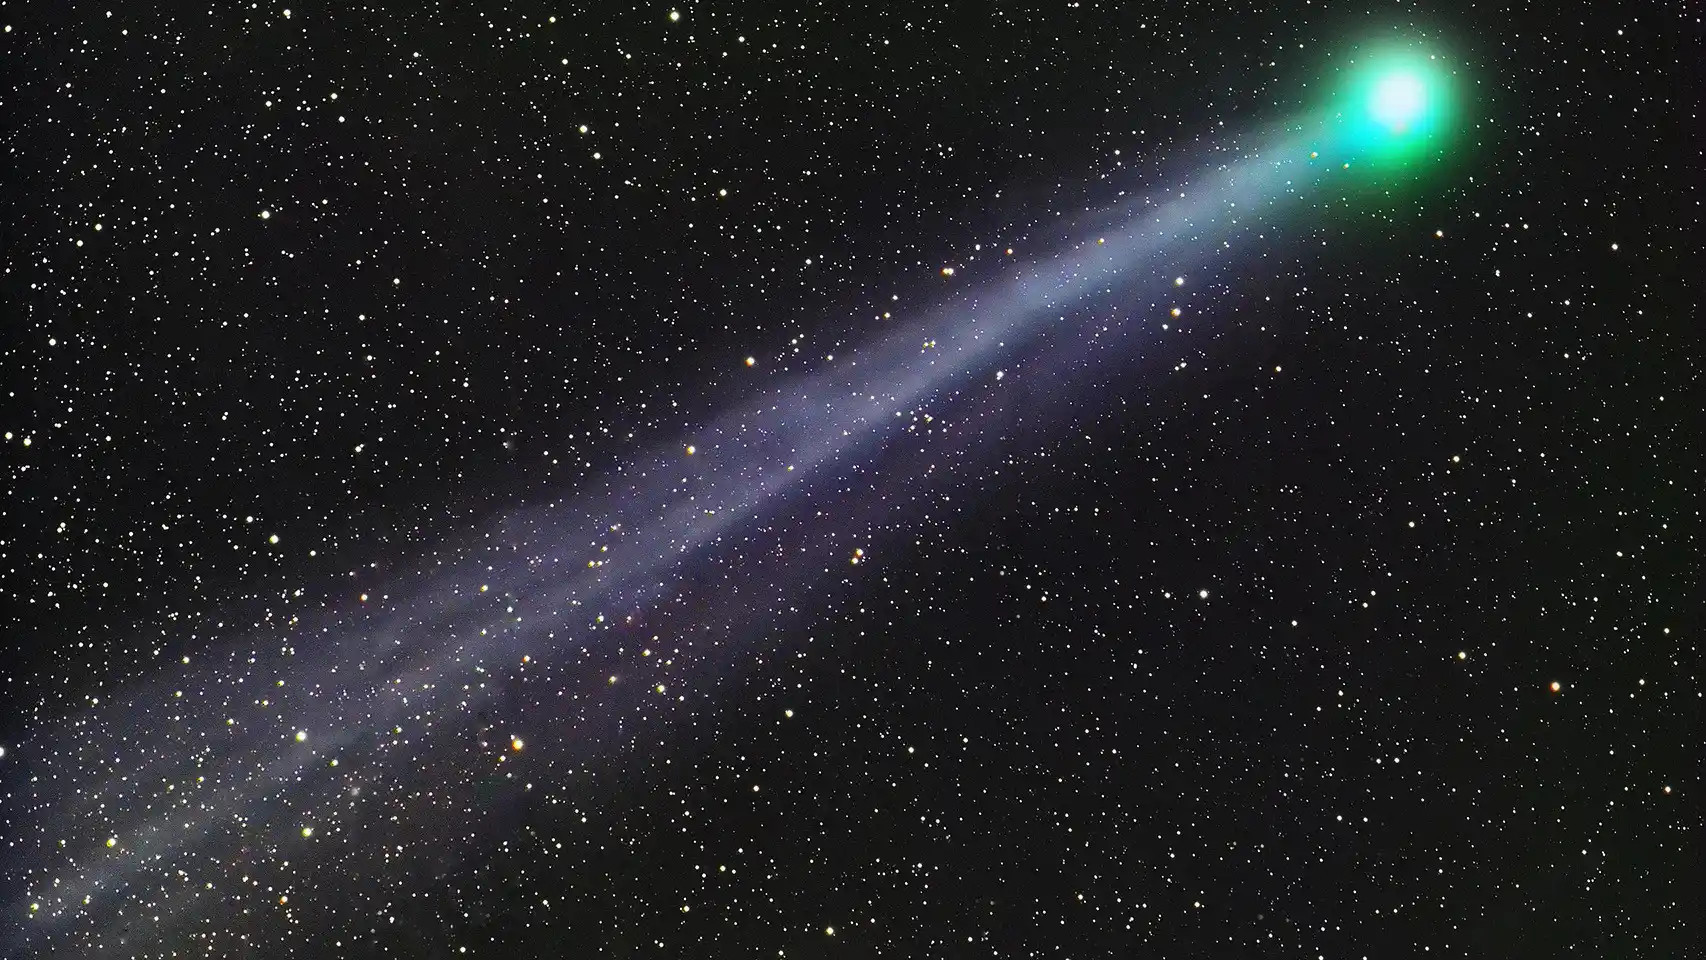 Un cometa en una imagen de archivo / ARCHIVO